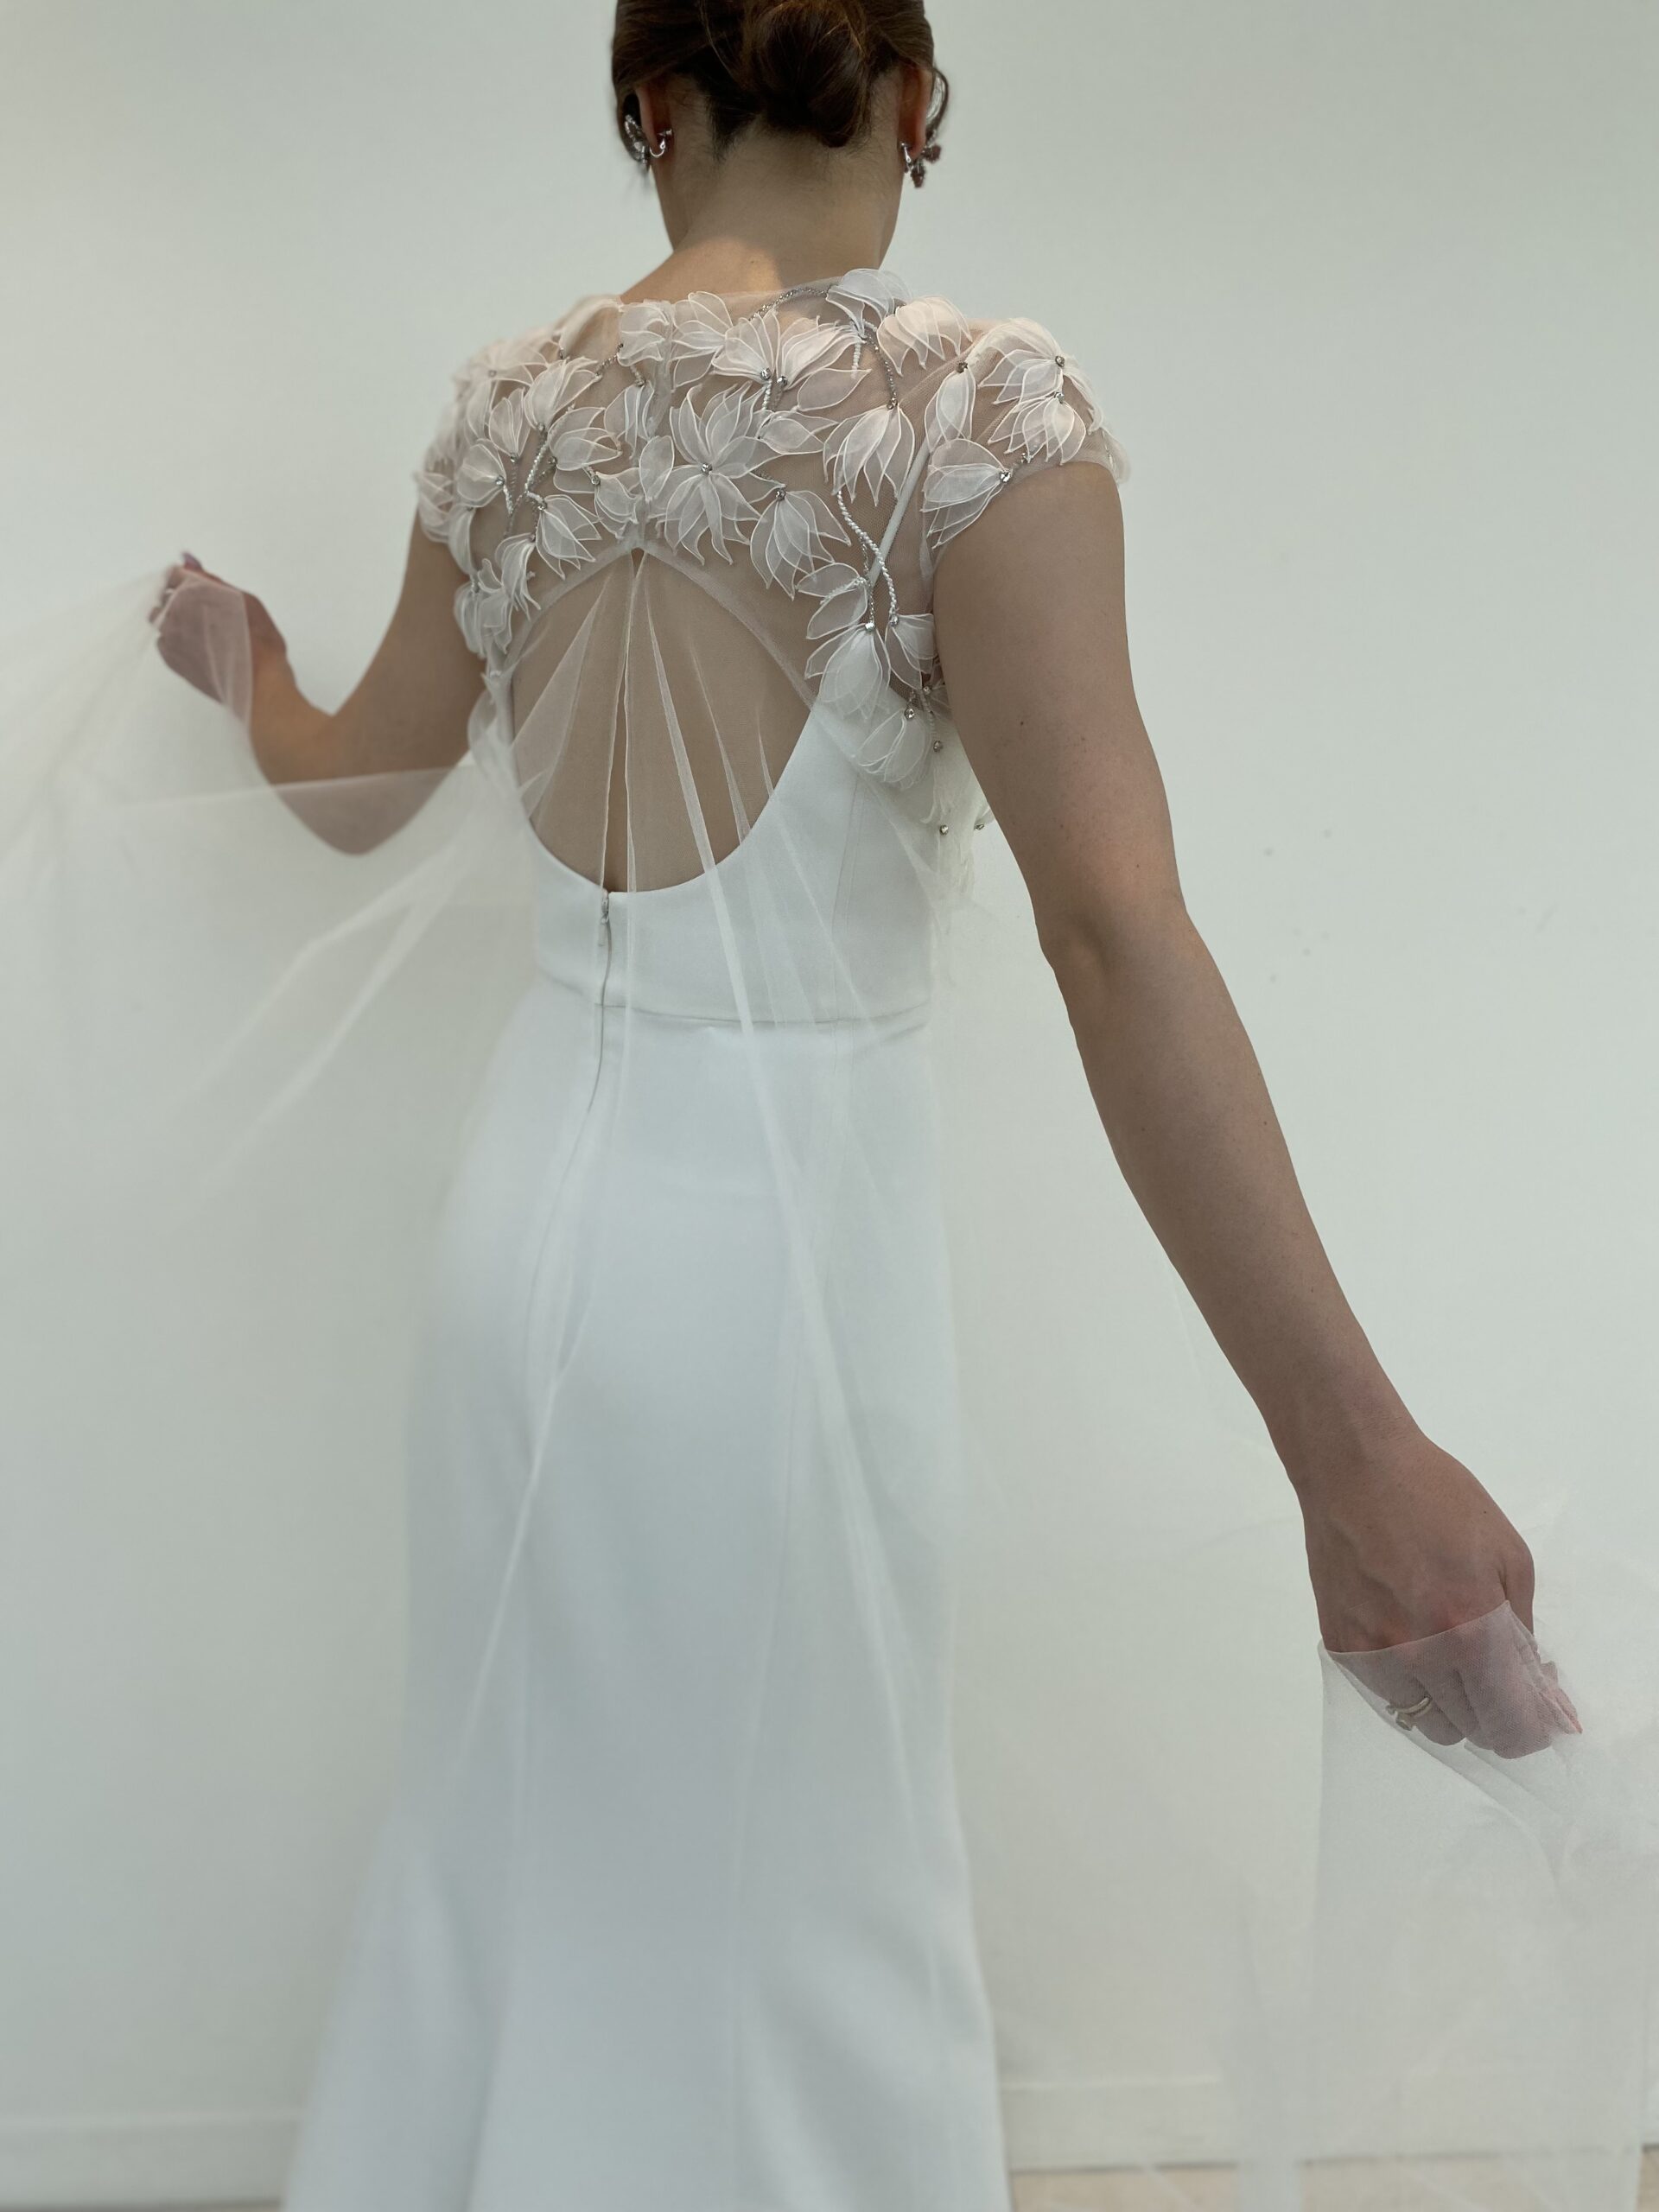 お背中からたっぷりと贅沢に使用されたチュール素材が印象に残る花嫁のお衣裳